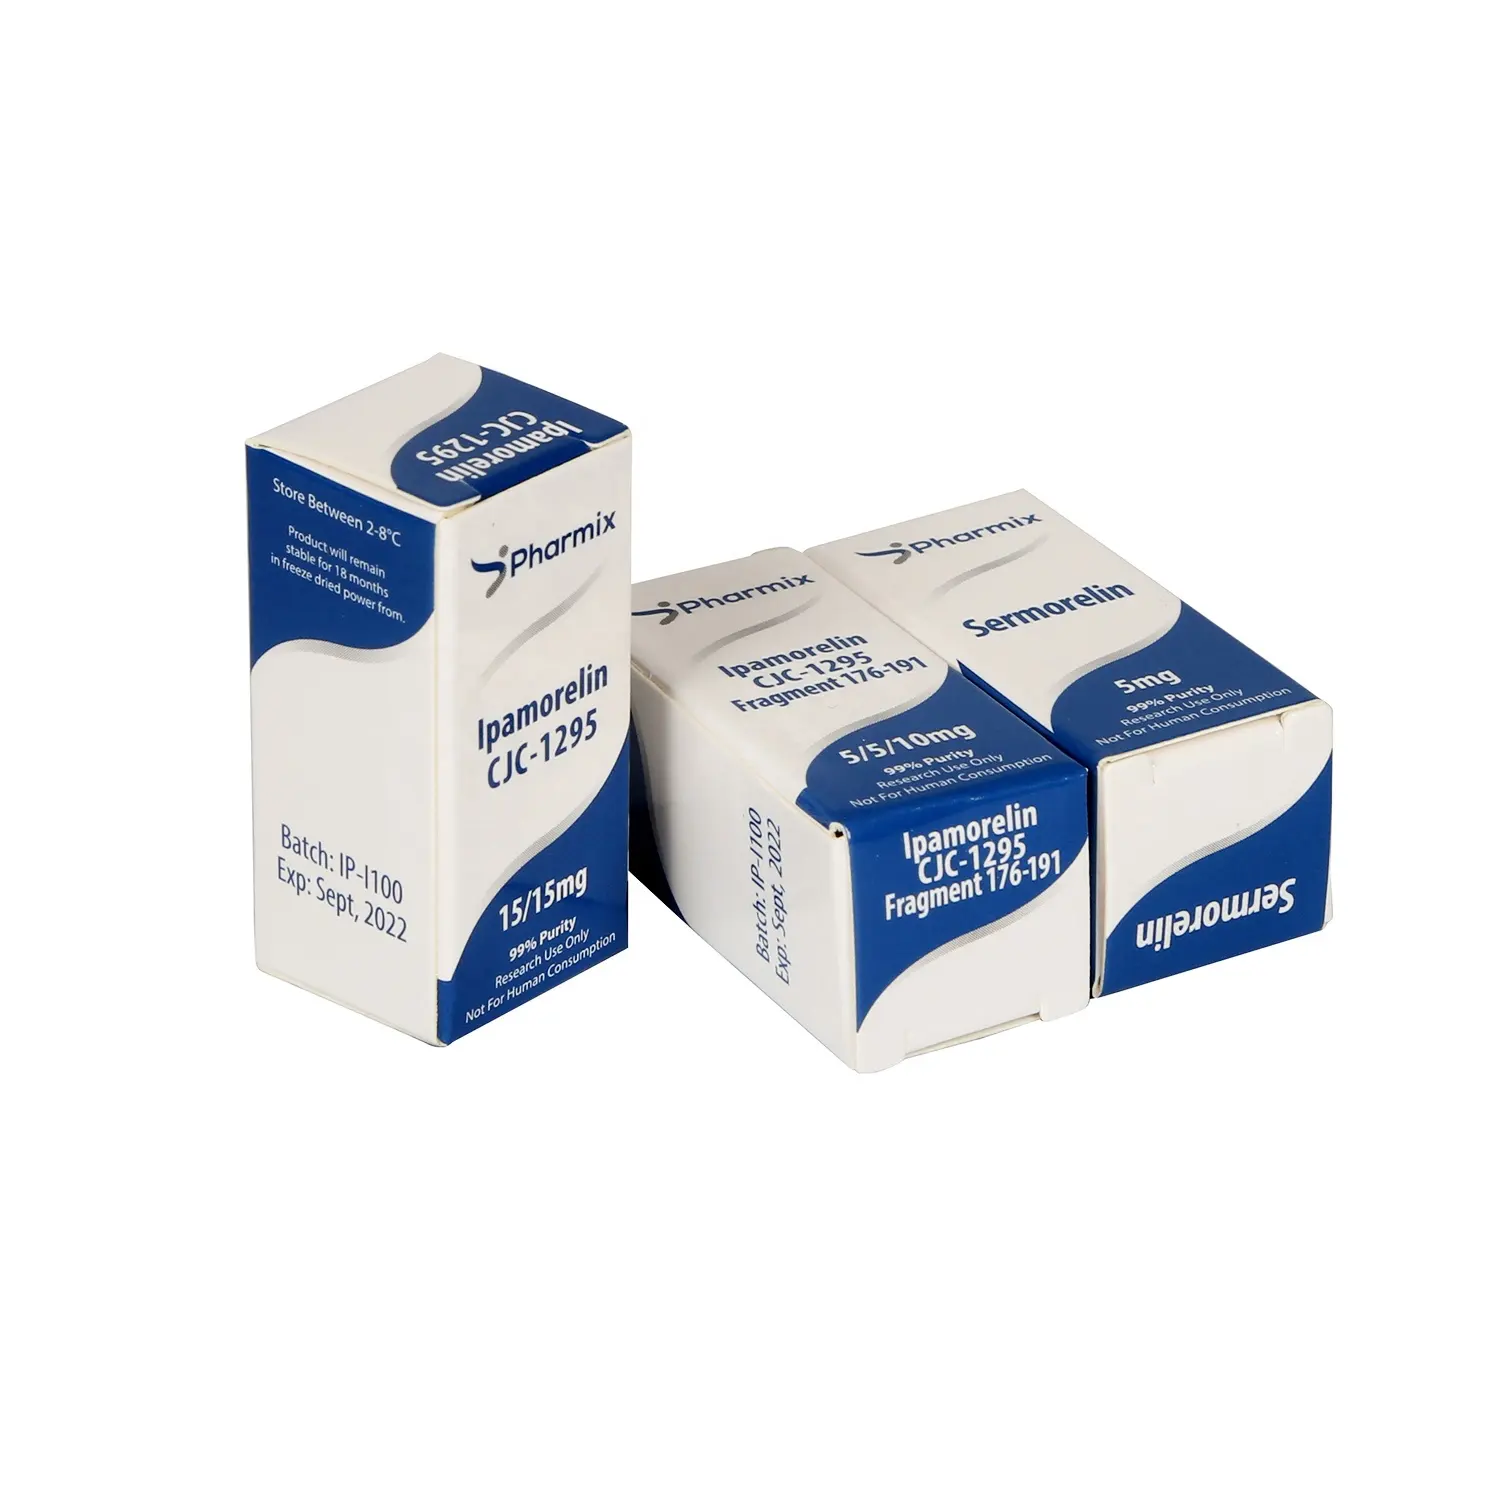 Personalizado impressão personalizada papelão durável medicina 10ml garrafa caixas